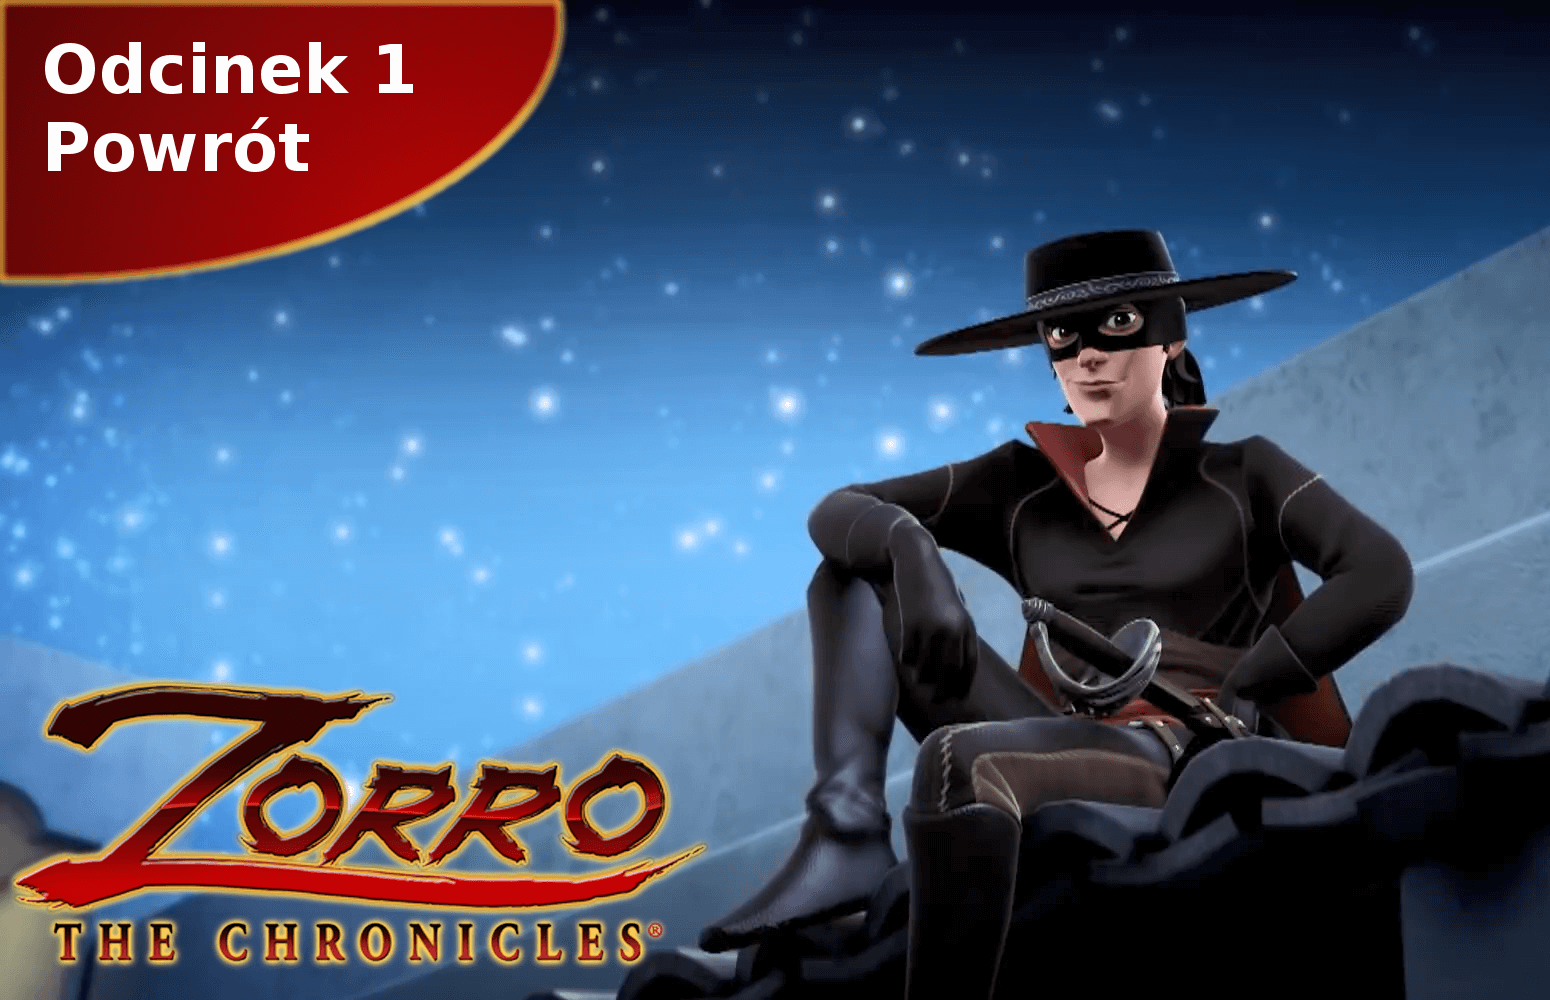 Kroniki Zorro odcinek 1 Powrót